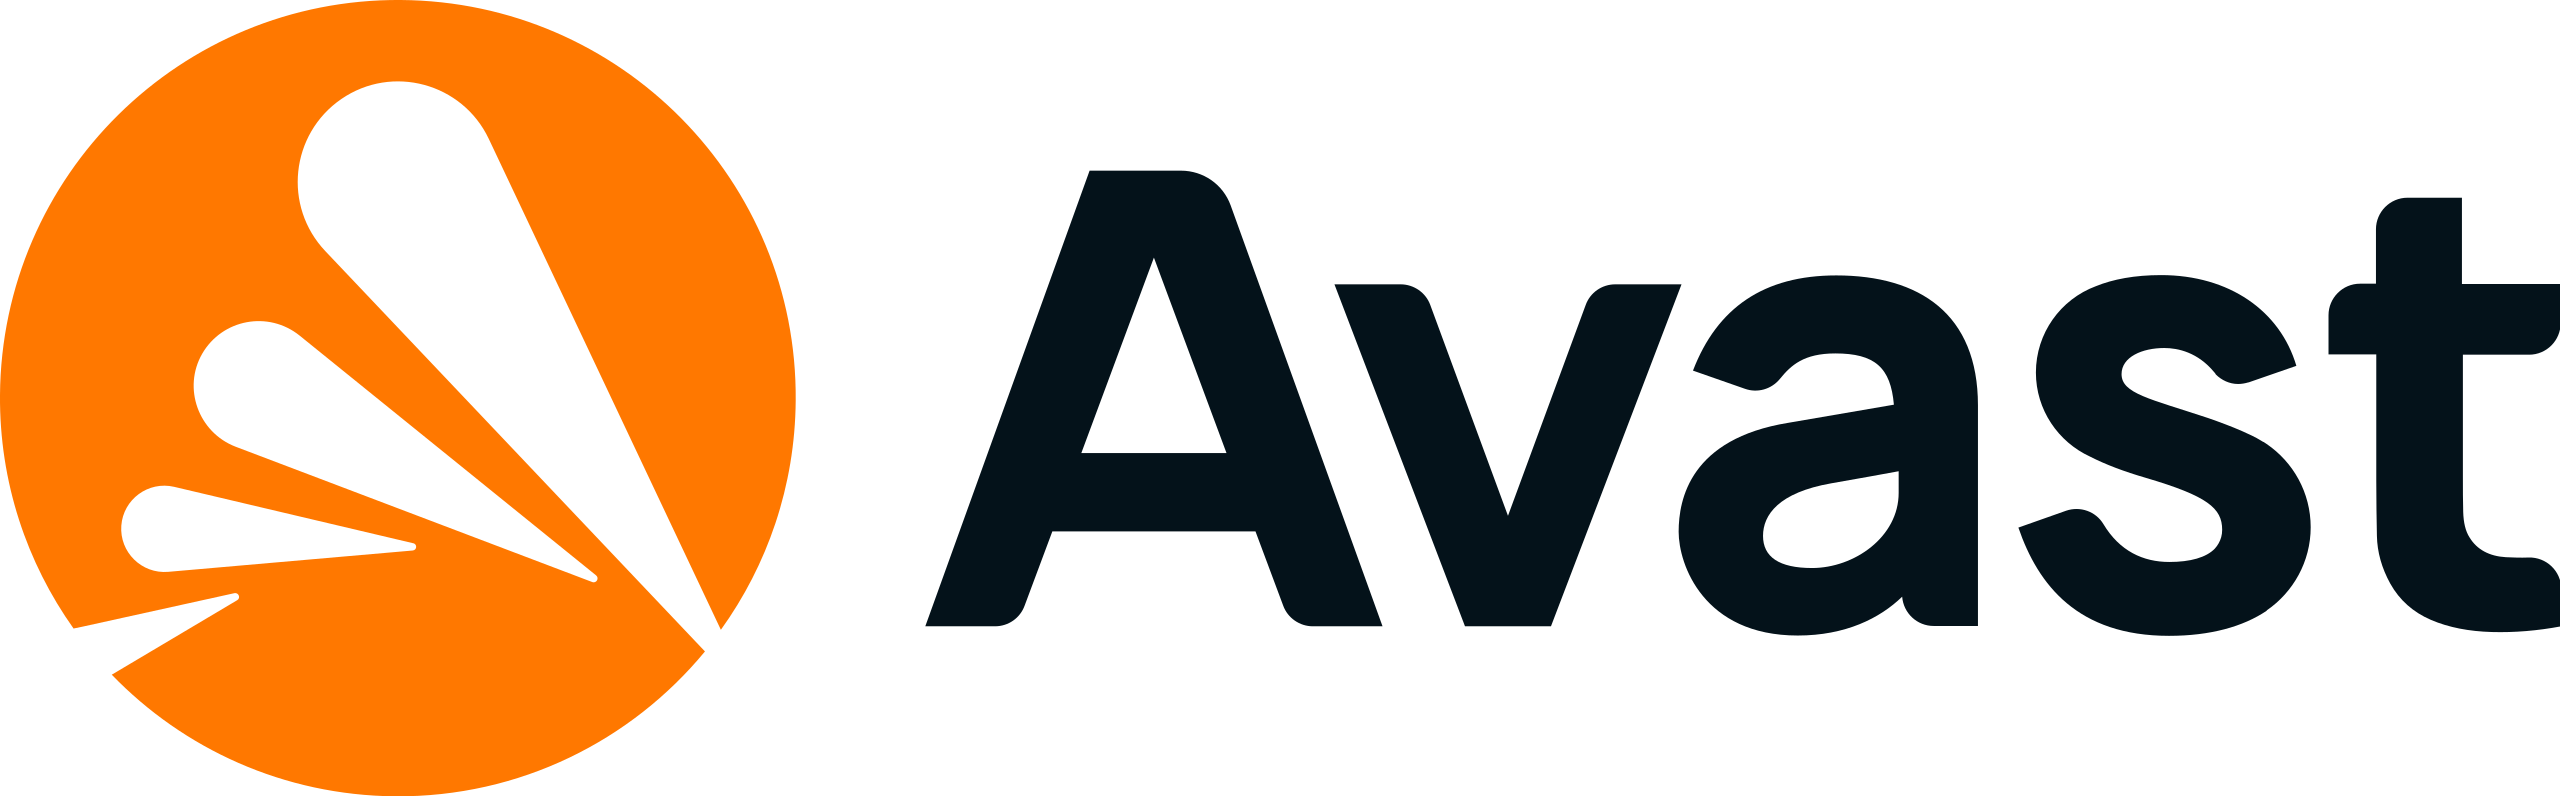 Avast_logo_2021.svg